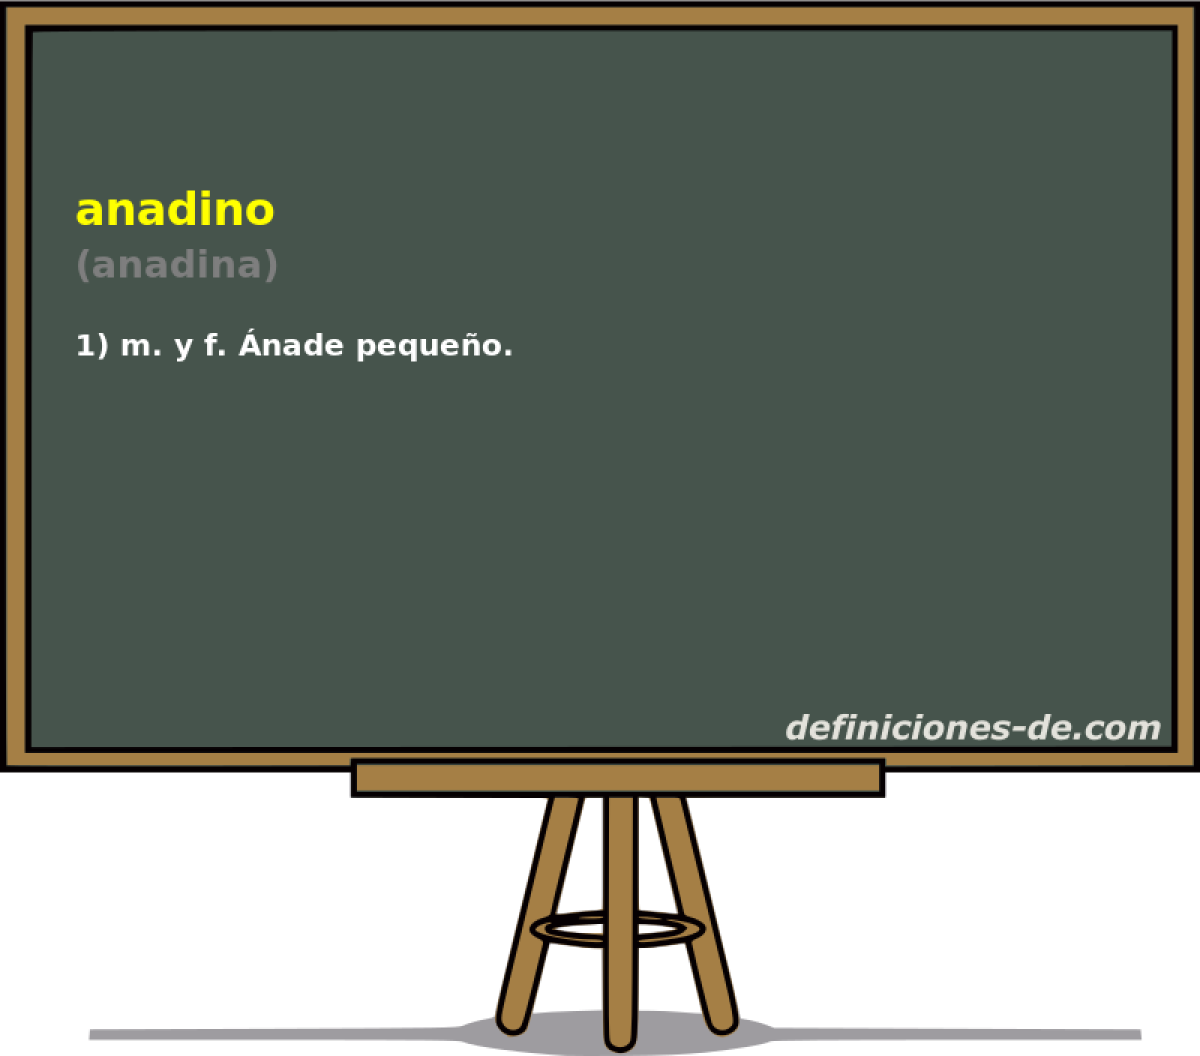 anadino (anadina)